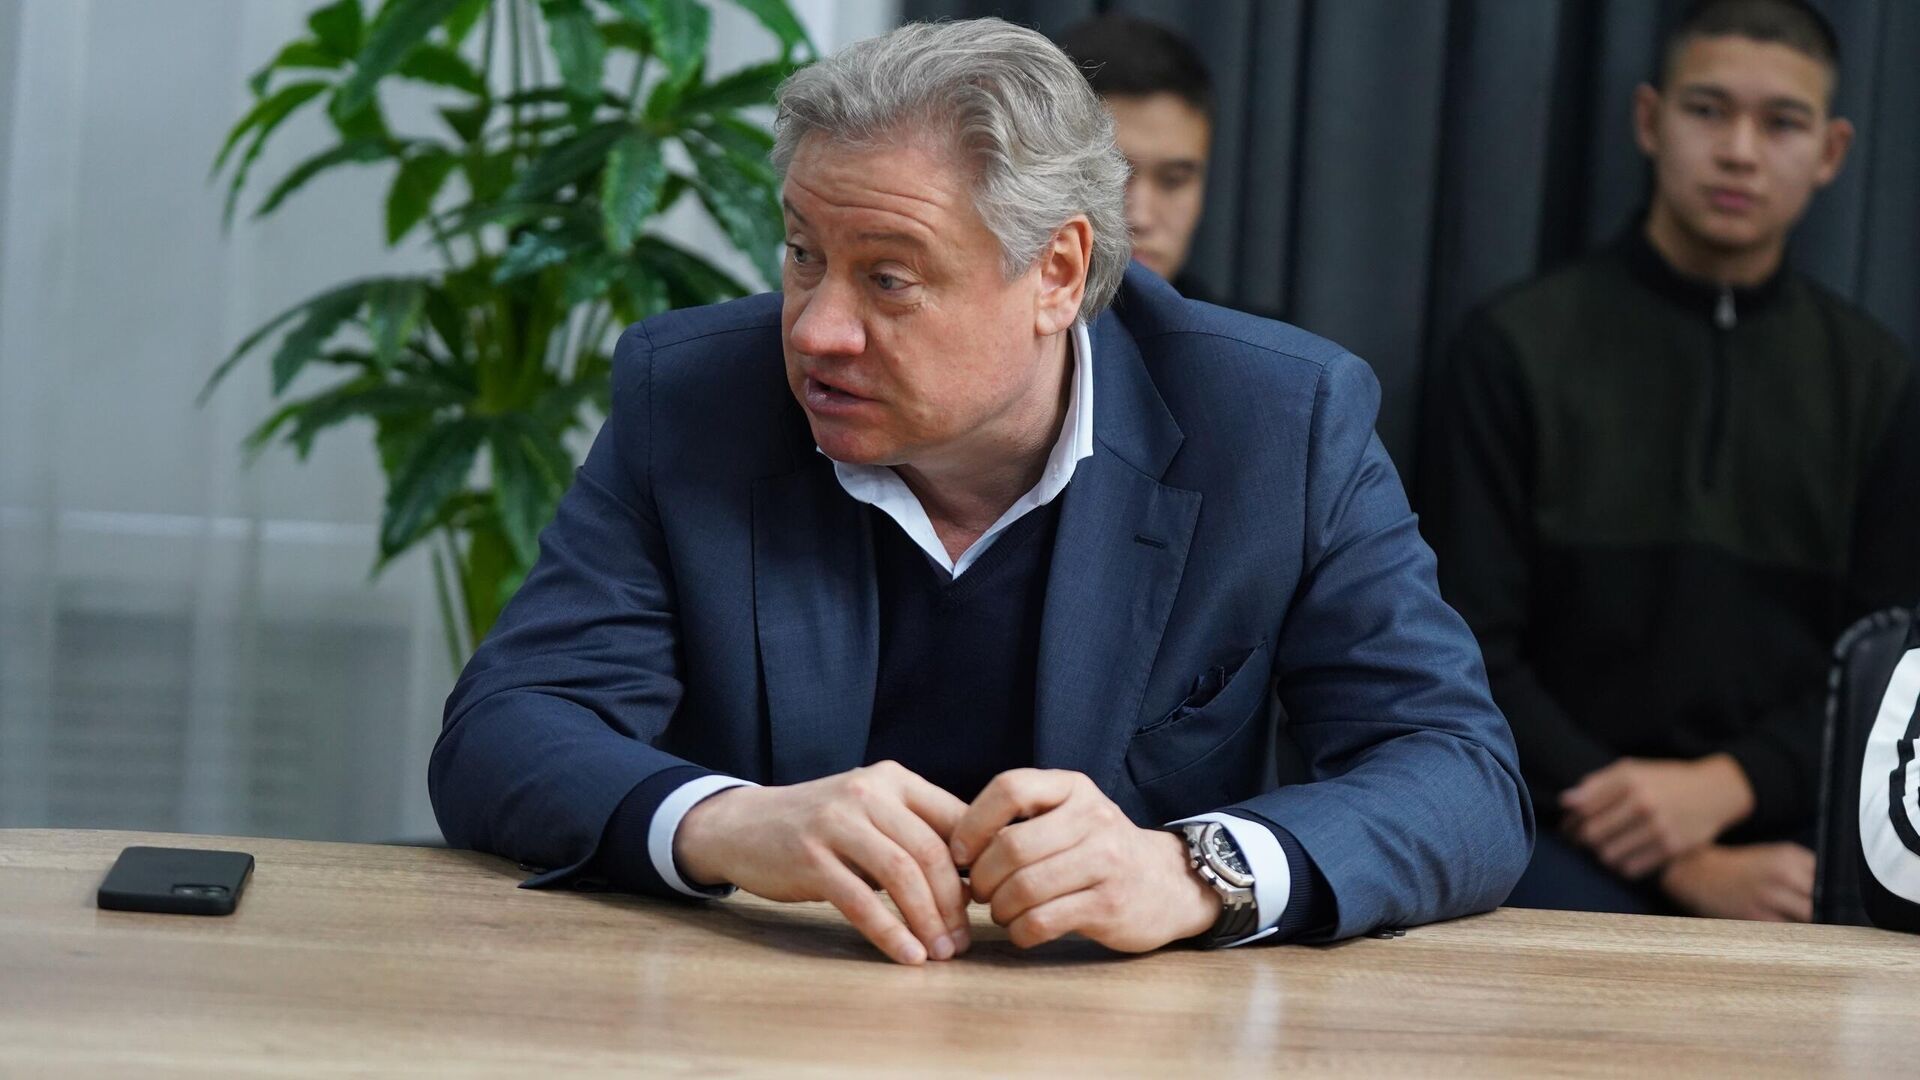 Канчельскис: ни один тренер не поможет «Спартаку» в ближайшие 3-4 года